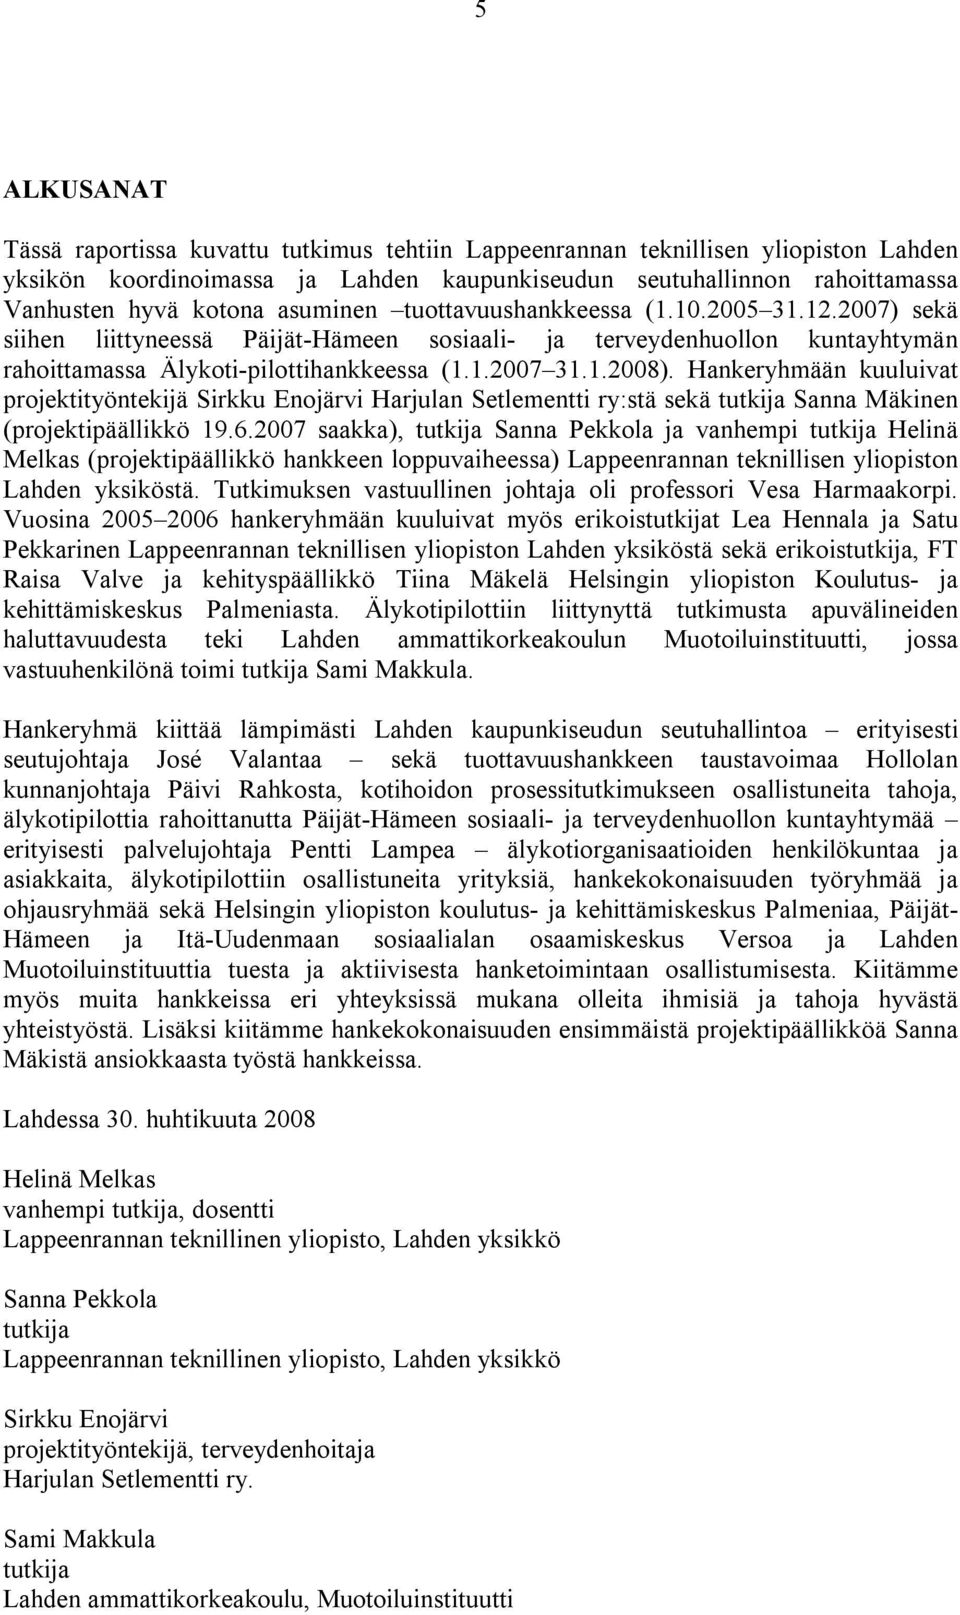 Hankeryhmään kuuluivat projektityöntekijä Sirkku Enojärvi Harjulan Setlementti ry:stä sekä tutkija Sanna Mäkinen (projektipäällikkö 19.6.